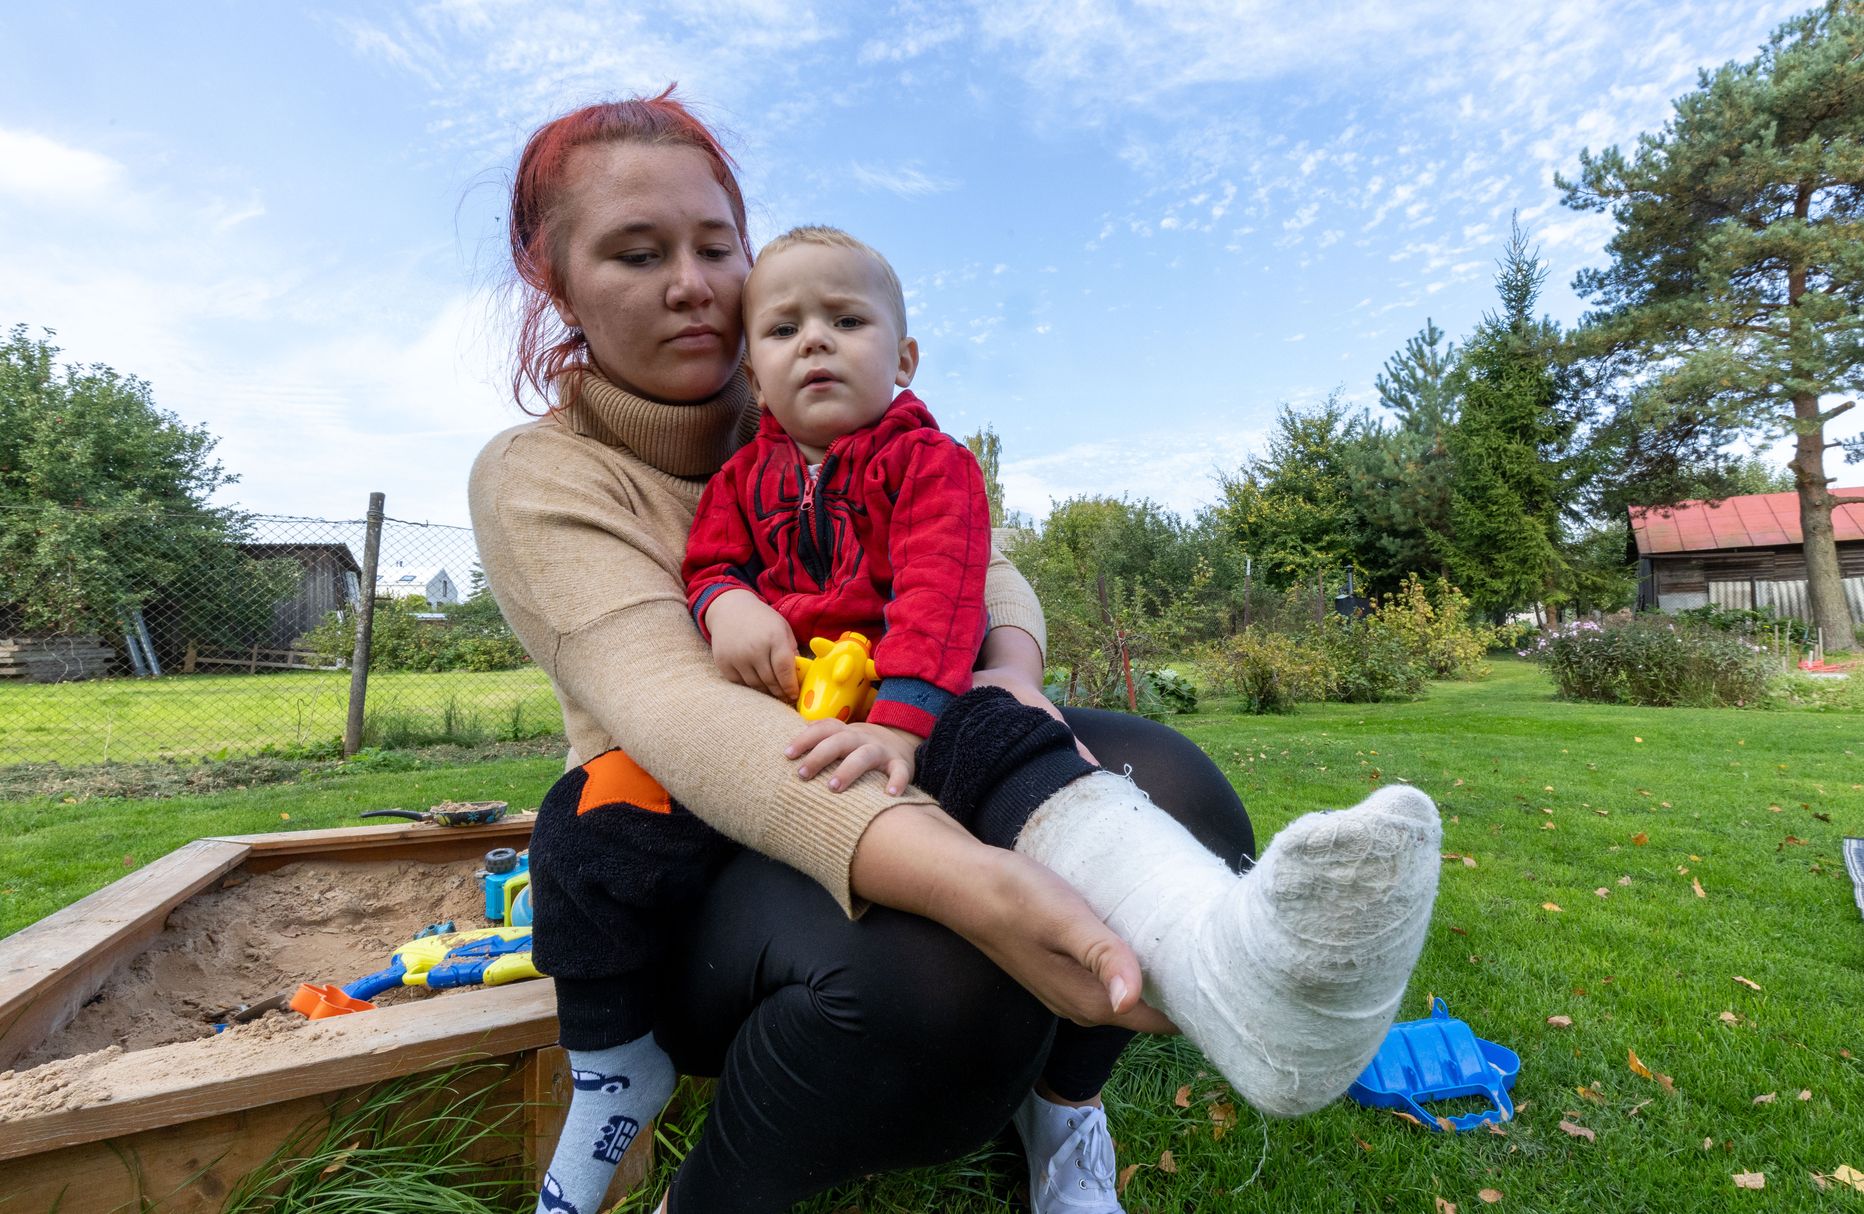 Annika Ärtis näitab oma kaheaastase poja kipsis jalga. Naise väitel tekkis raske vigastus lasteaias.